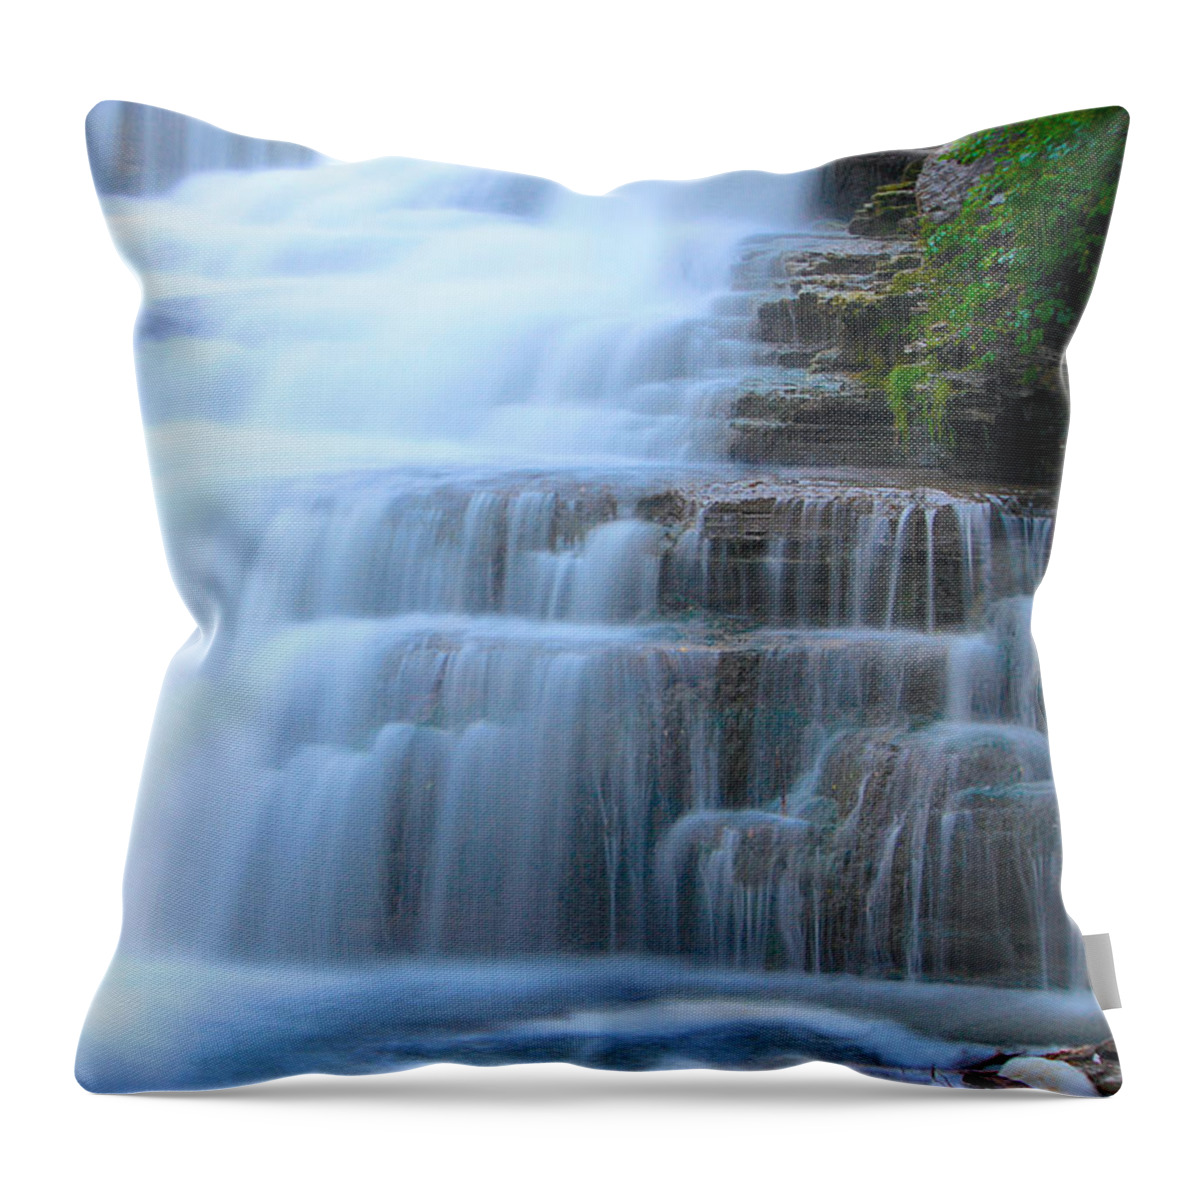 Nunweiler Throw Pillow featuring the photograph Glen Falls by Nunweiler Photography